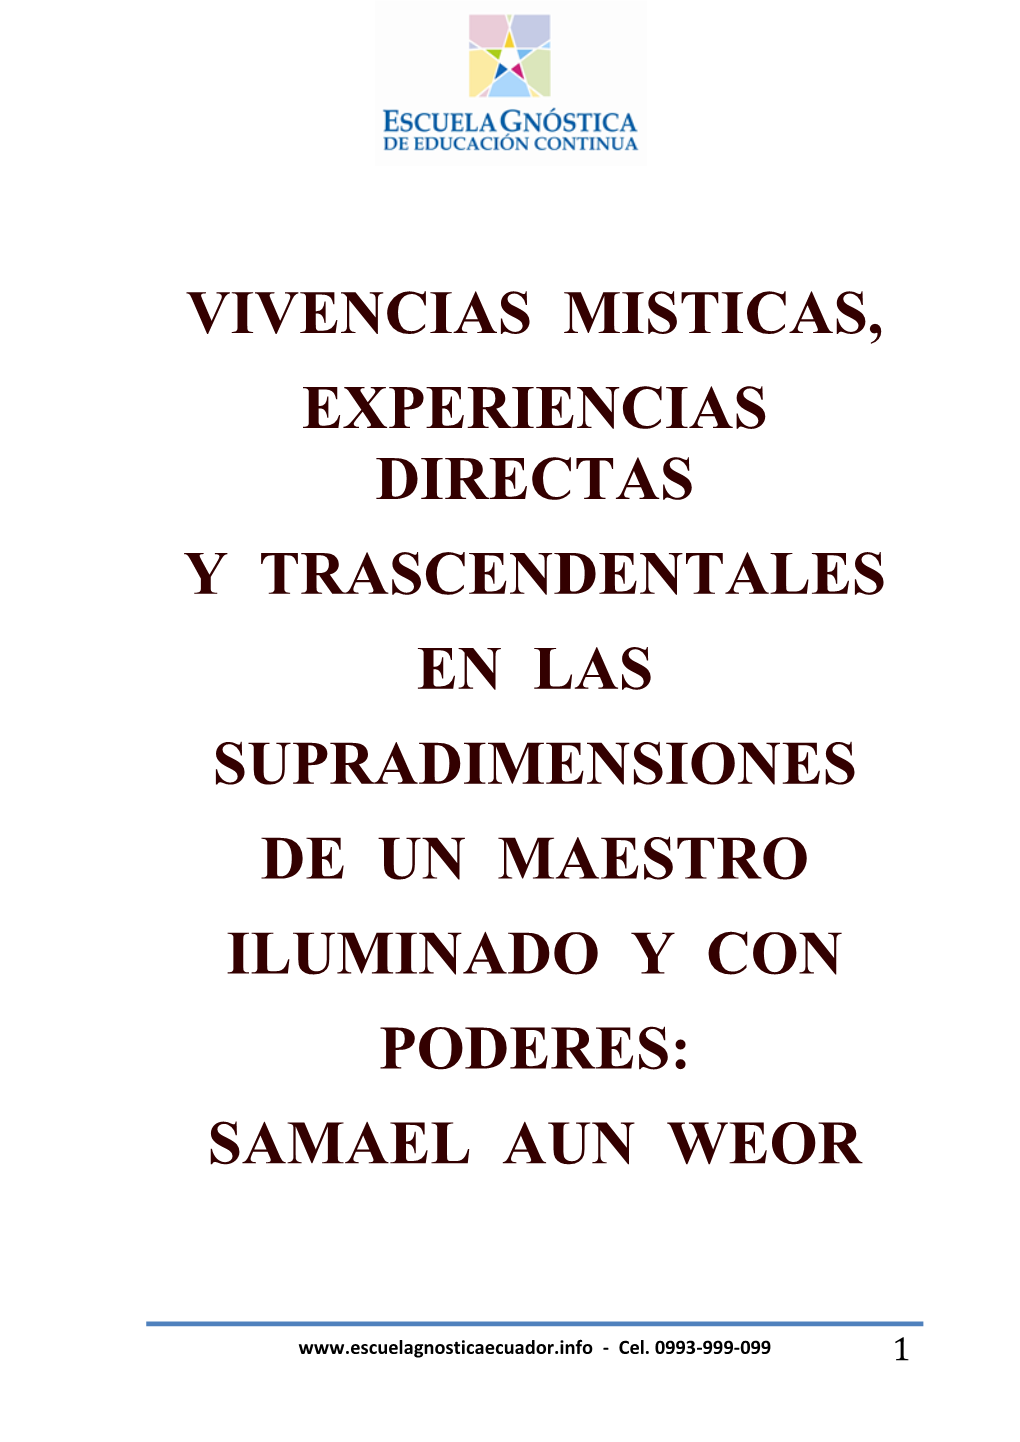 Descargar Archivo Completo De Las Experiencias Del Maestro Samael